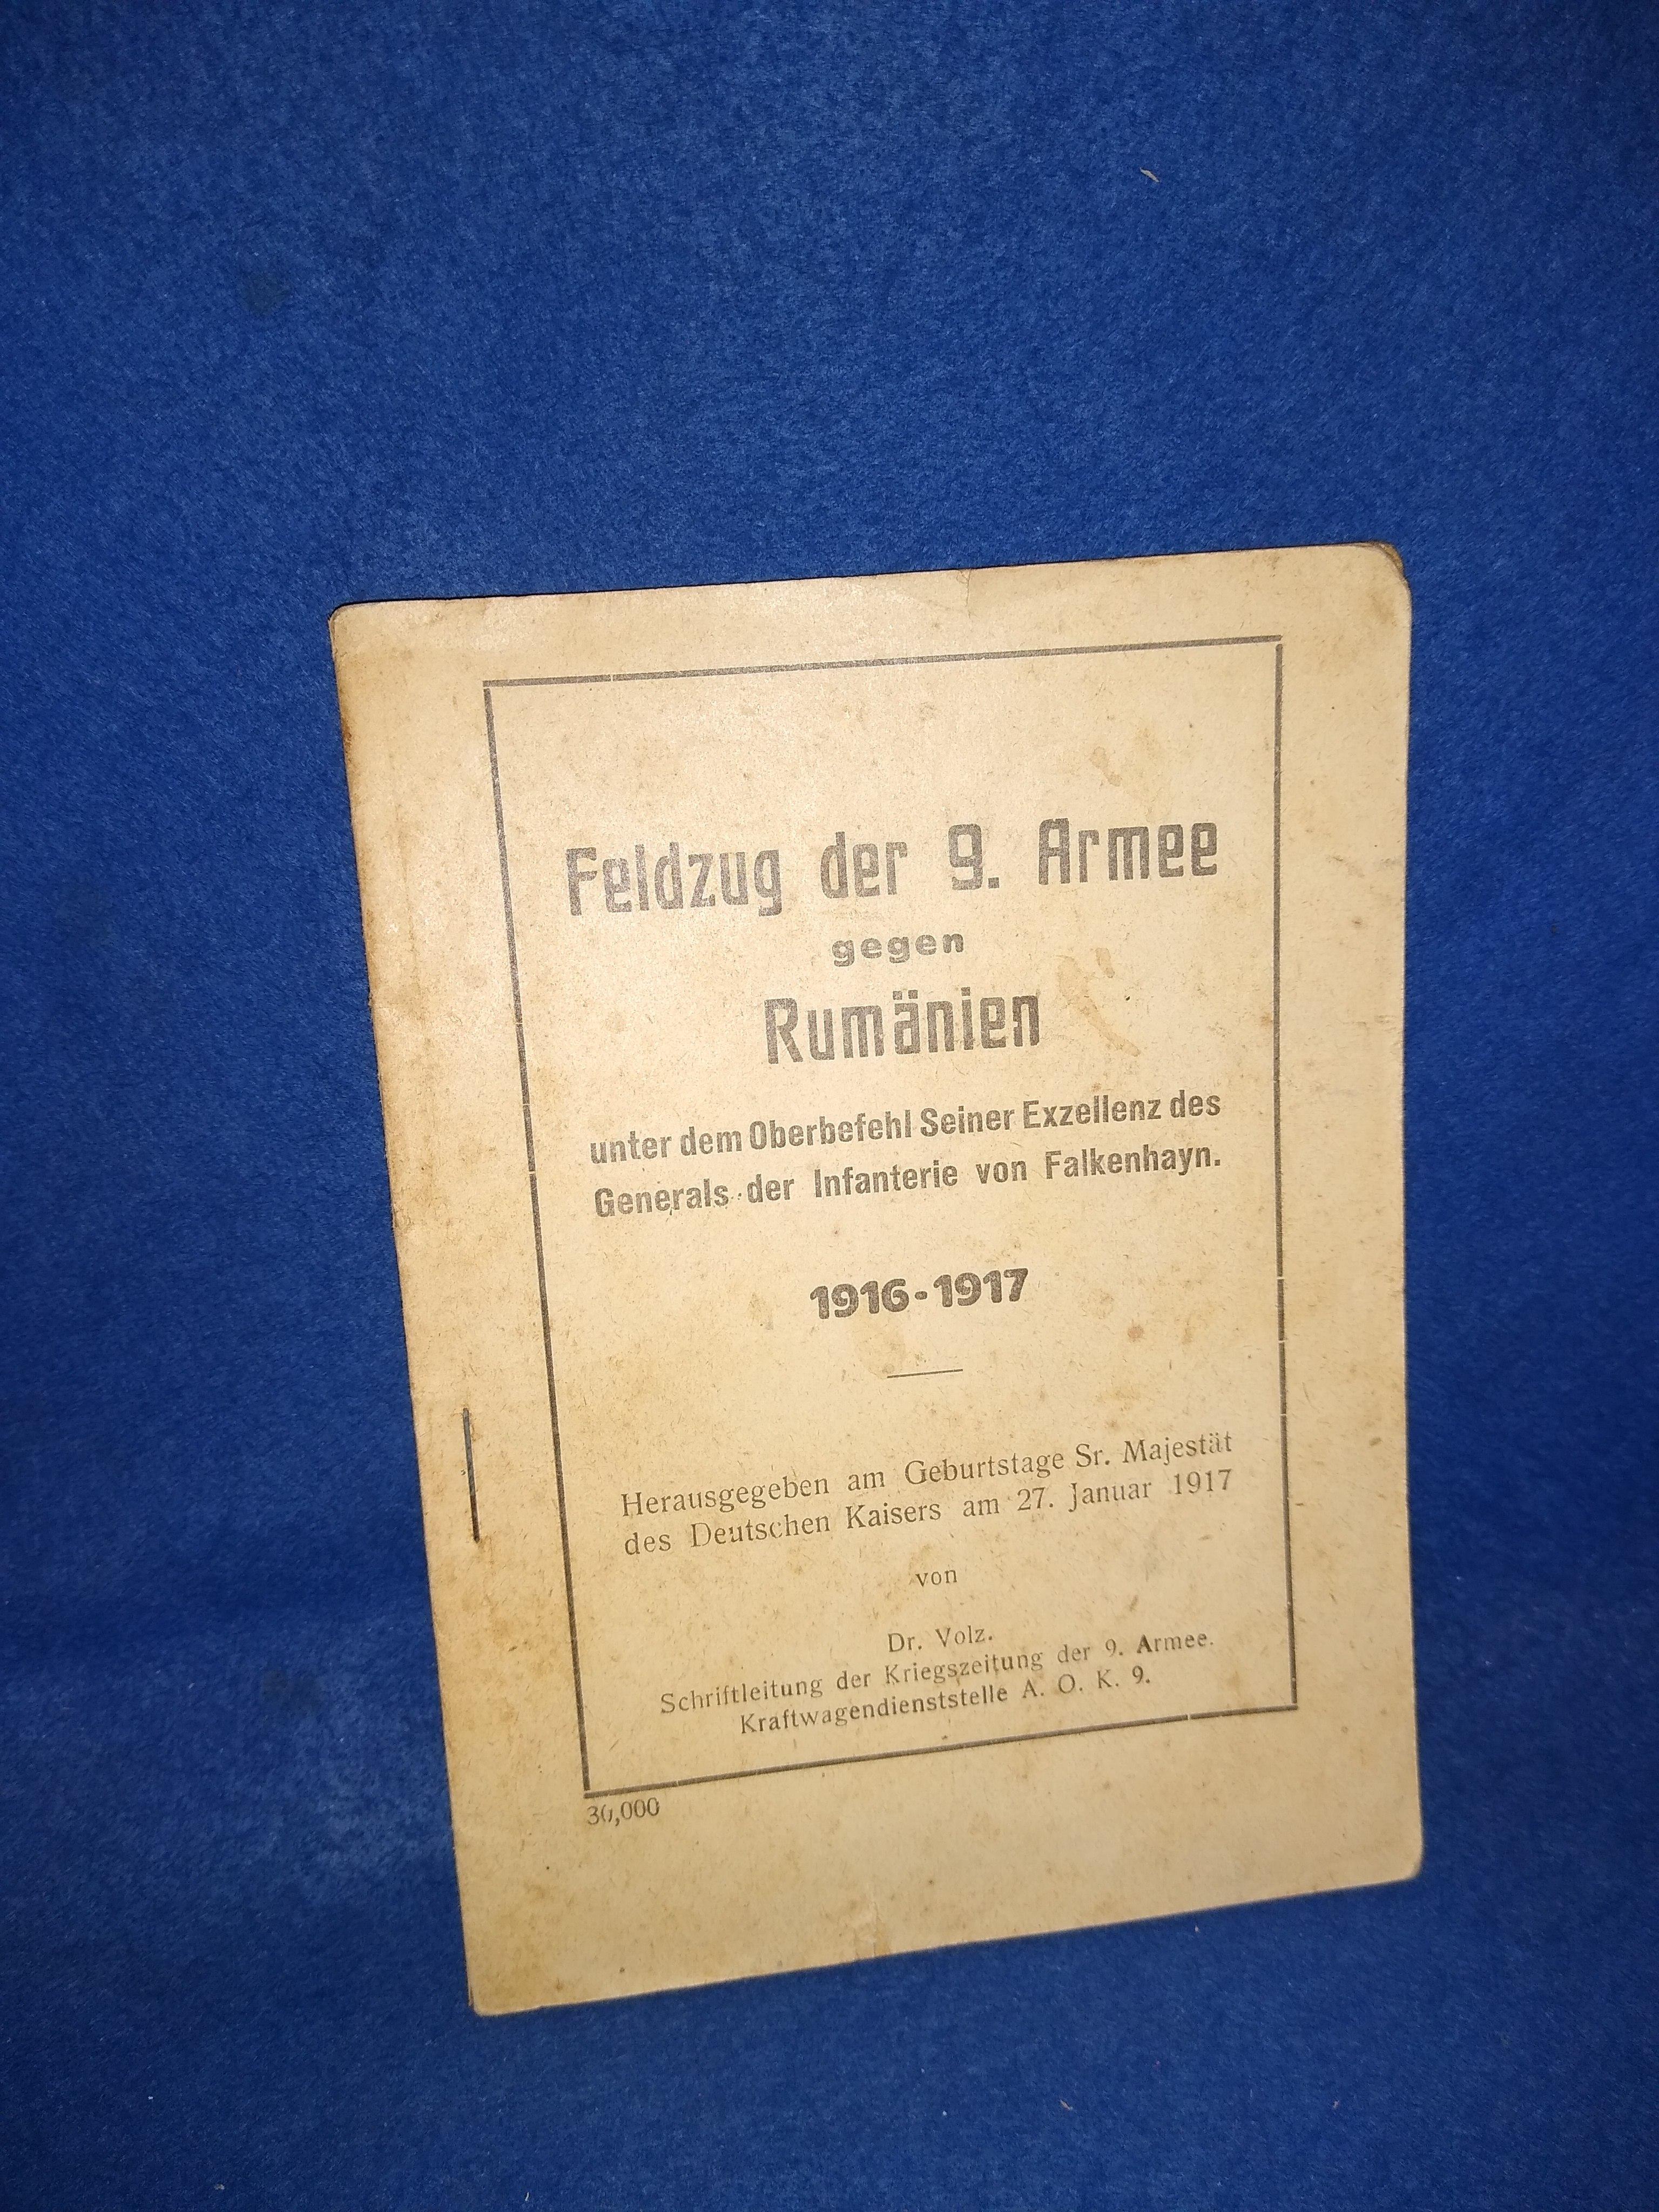 Feldzug der 9. Armee gegen Rumänien unter dem Oberbefehl Seiner Exzellenz des Generals der Infanterie von Falkenhayn 1916-1917. Seltenes Exemplar!